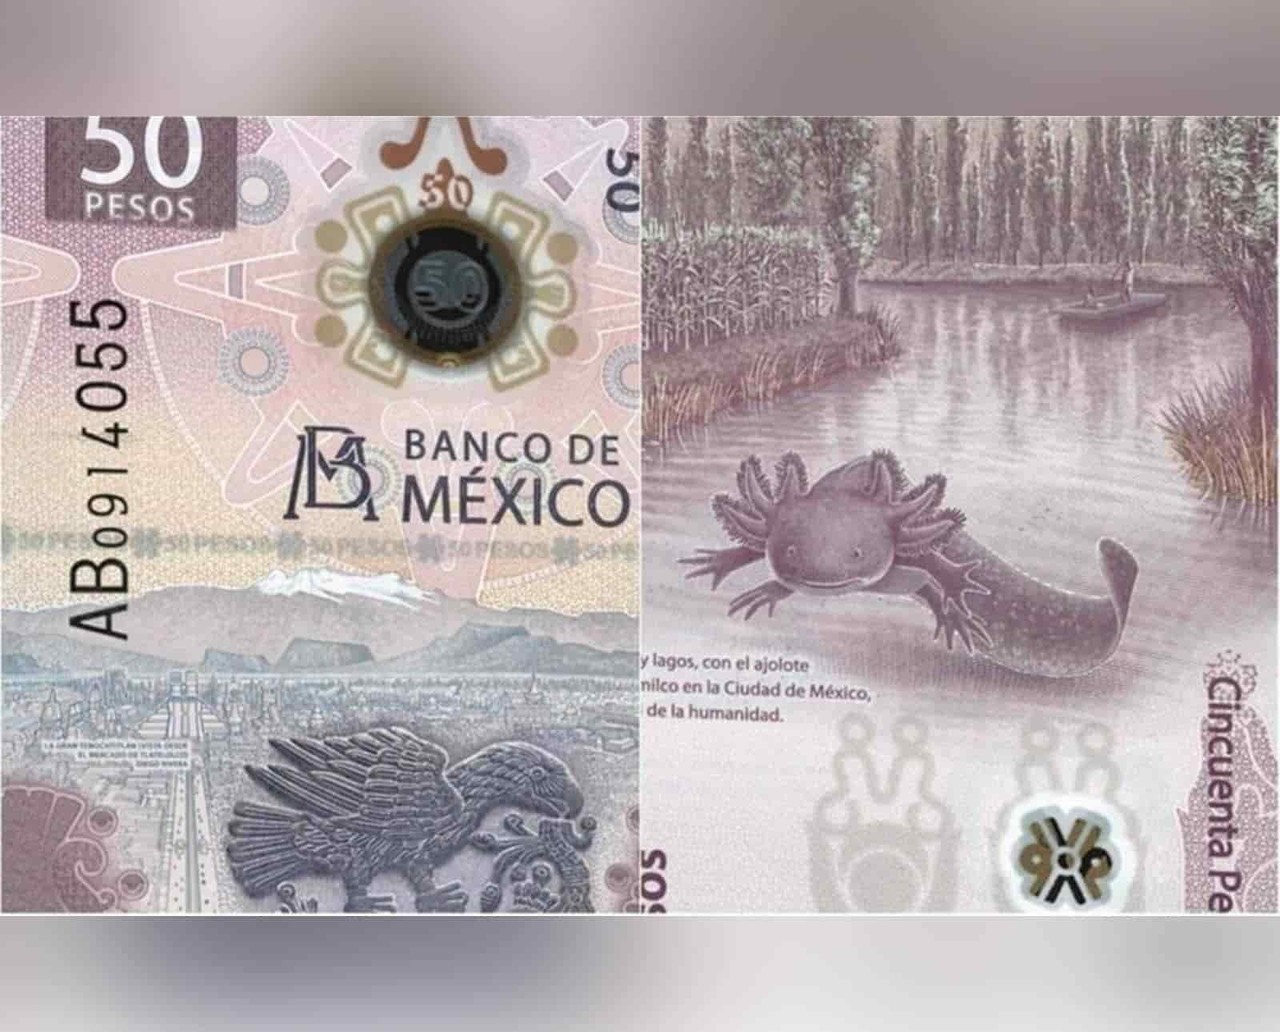 ¡Es el más bello! Con el ajolote, México obtiene premio al billete del año